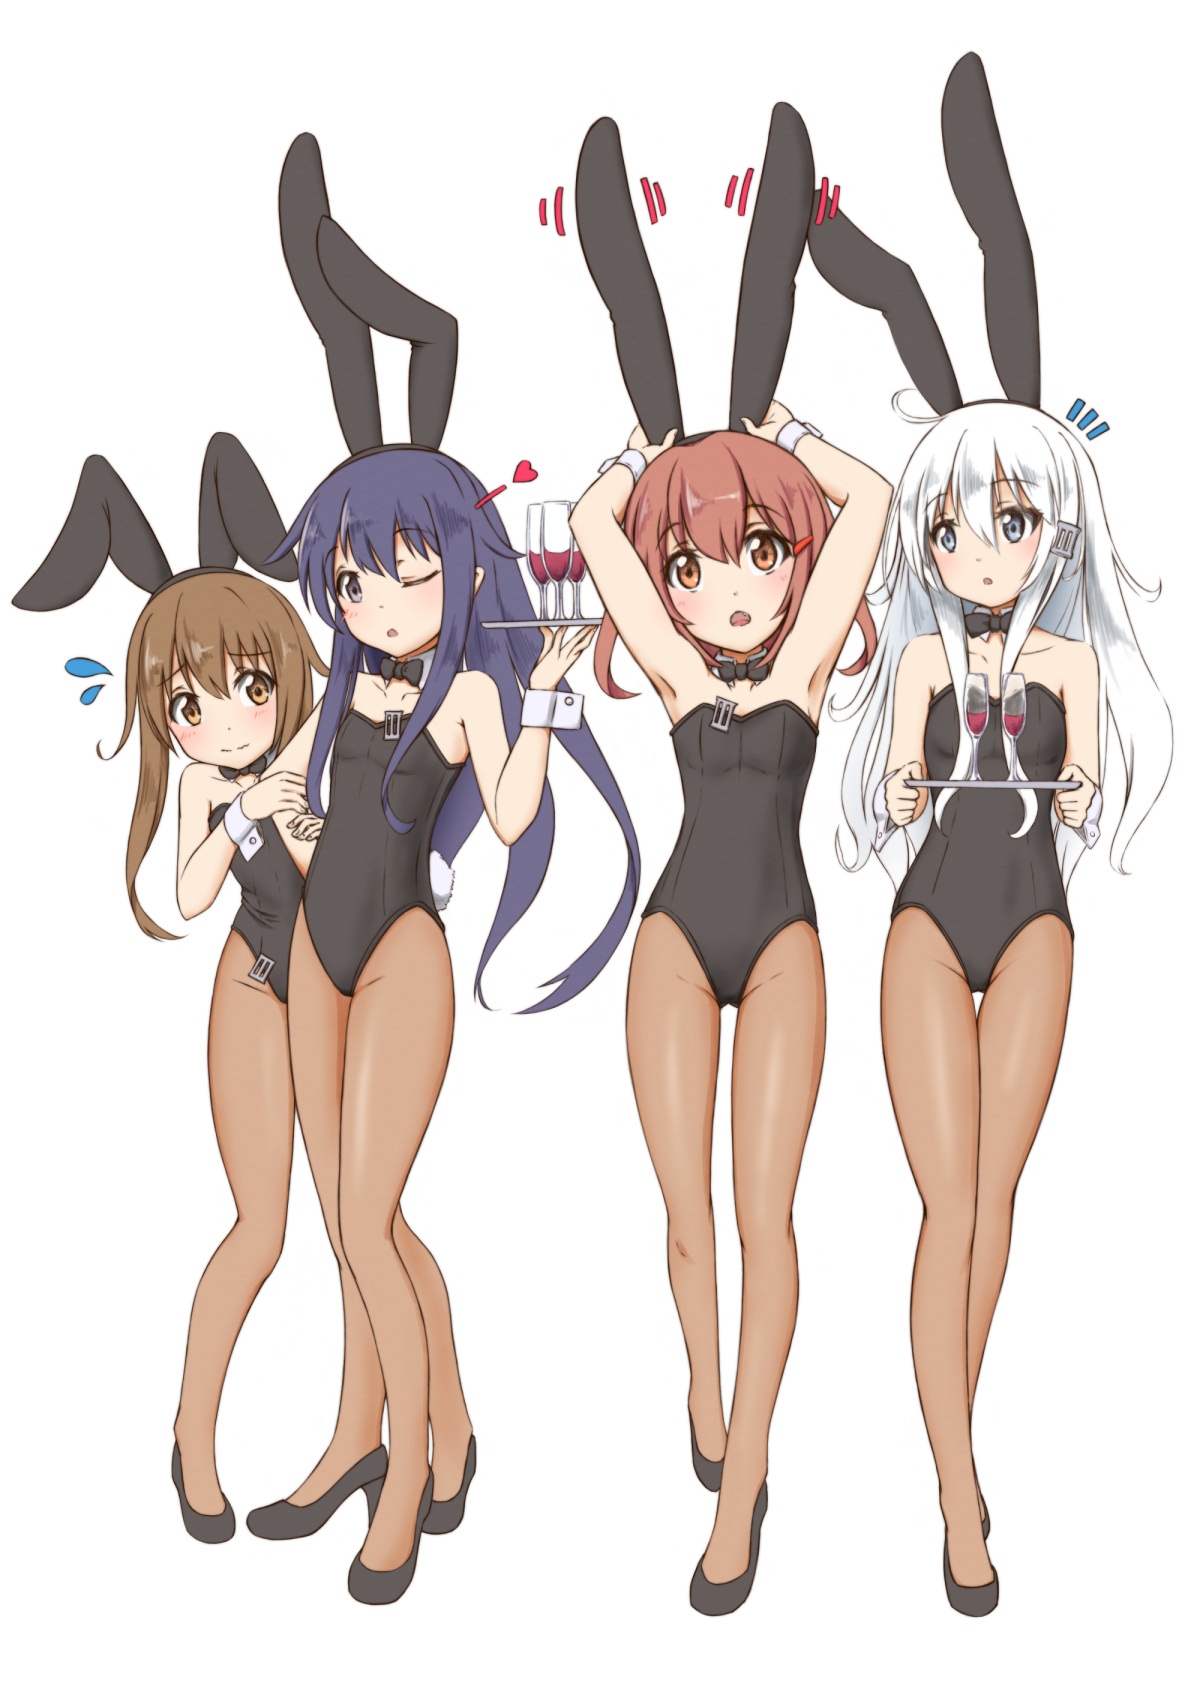 艦これの第六駆逐隊暁型4姉妹、暁・響・雷・電のロリハーレム二次萌え&エロ画像-11